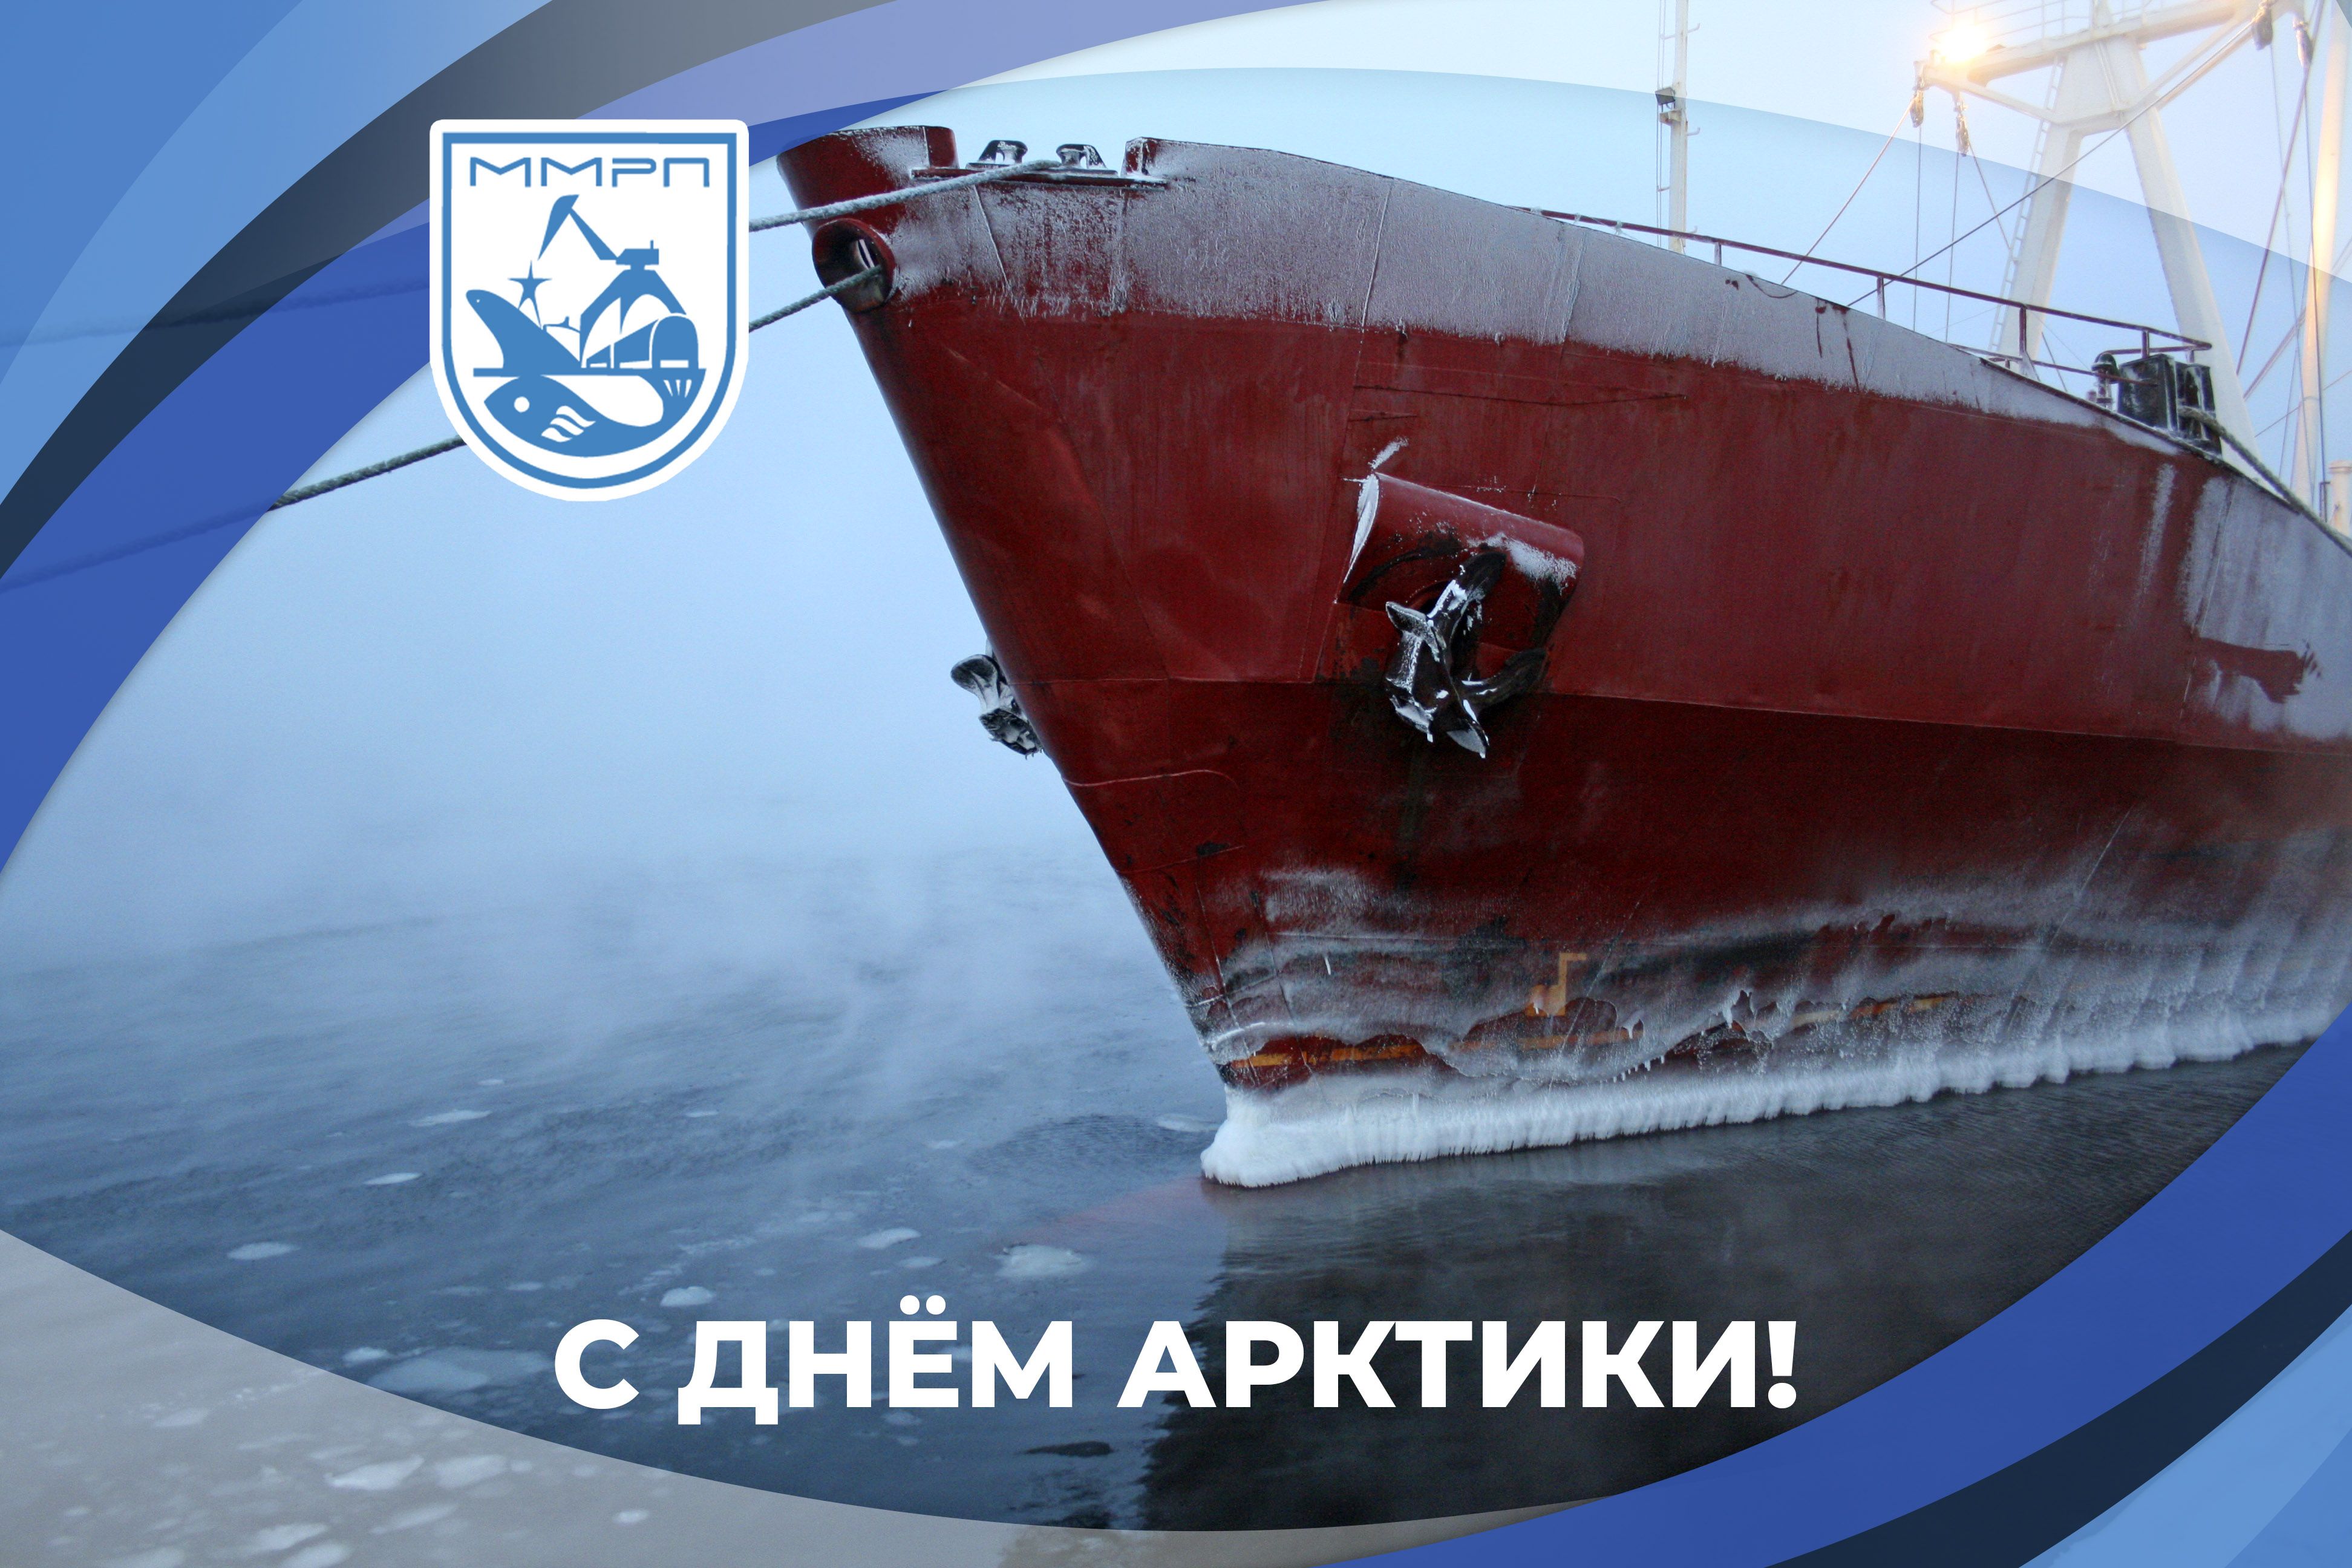 Мурманский морской рыбный порт поздравляет с Днем Арктики!